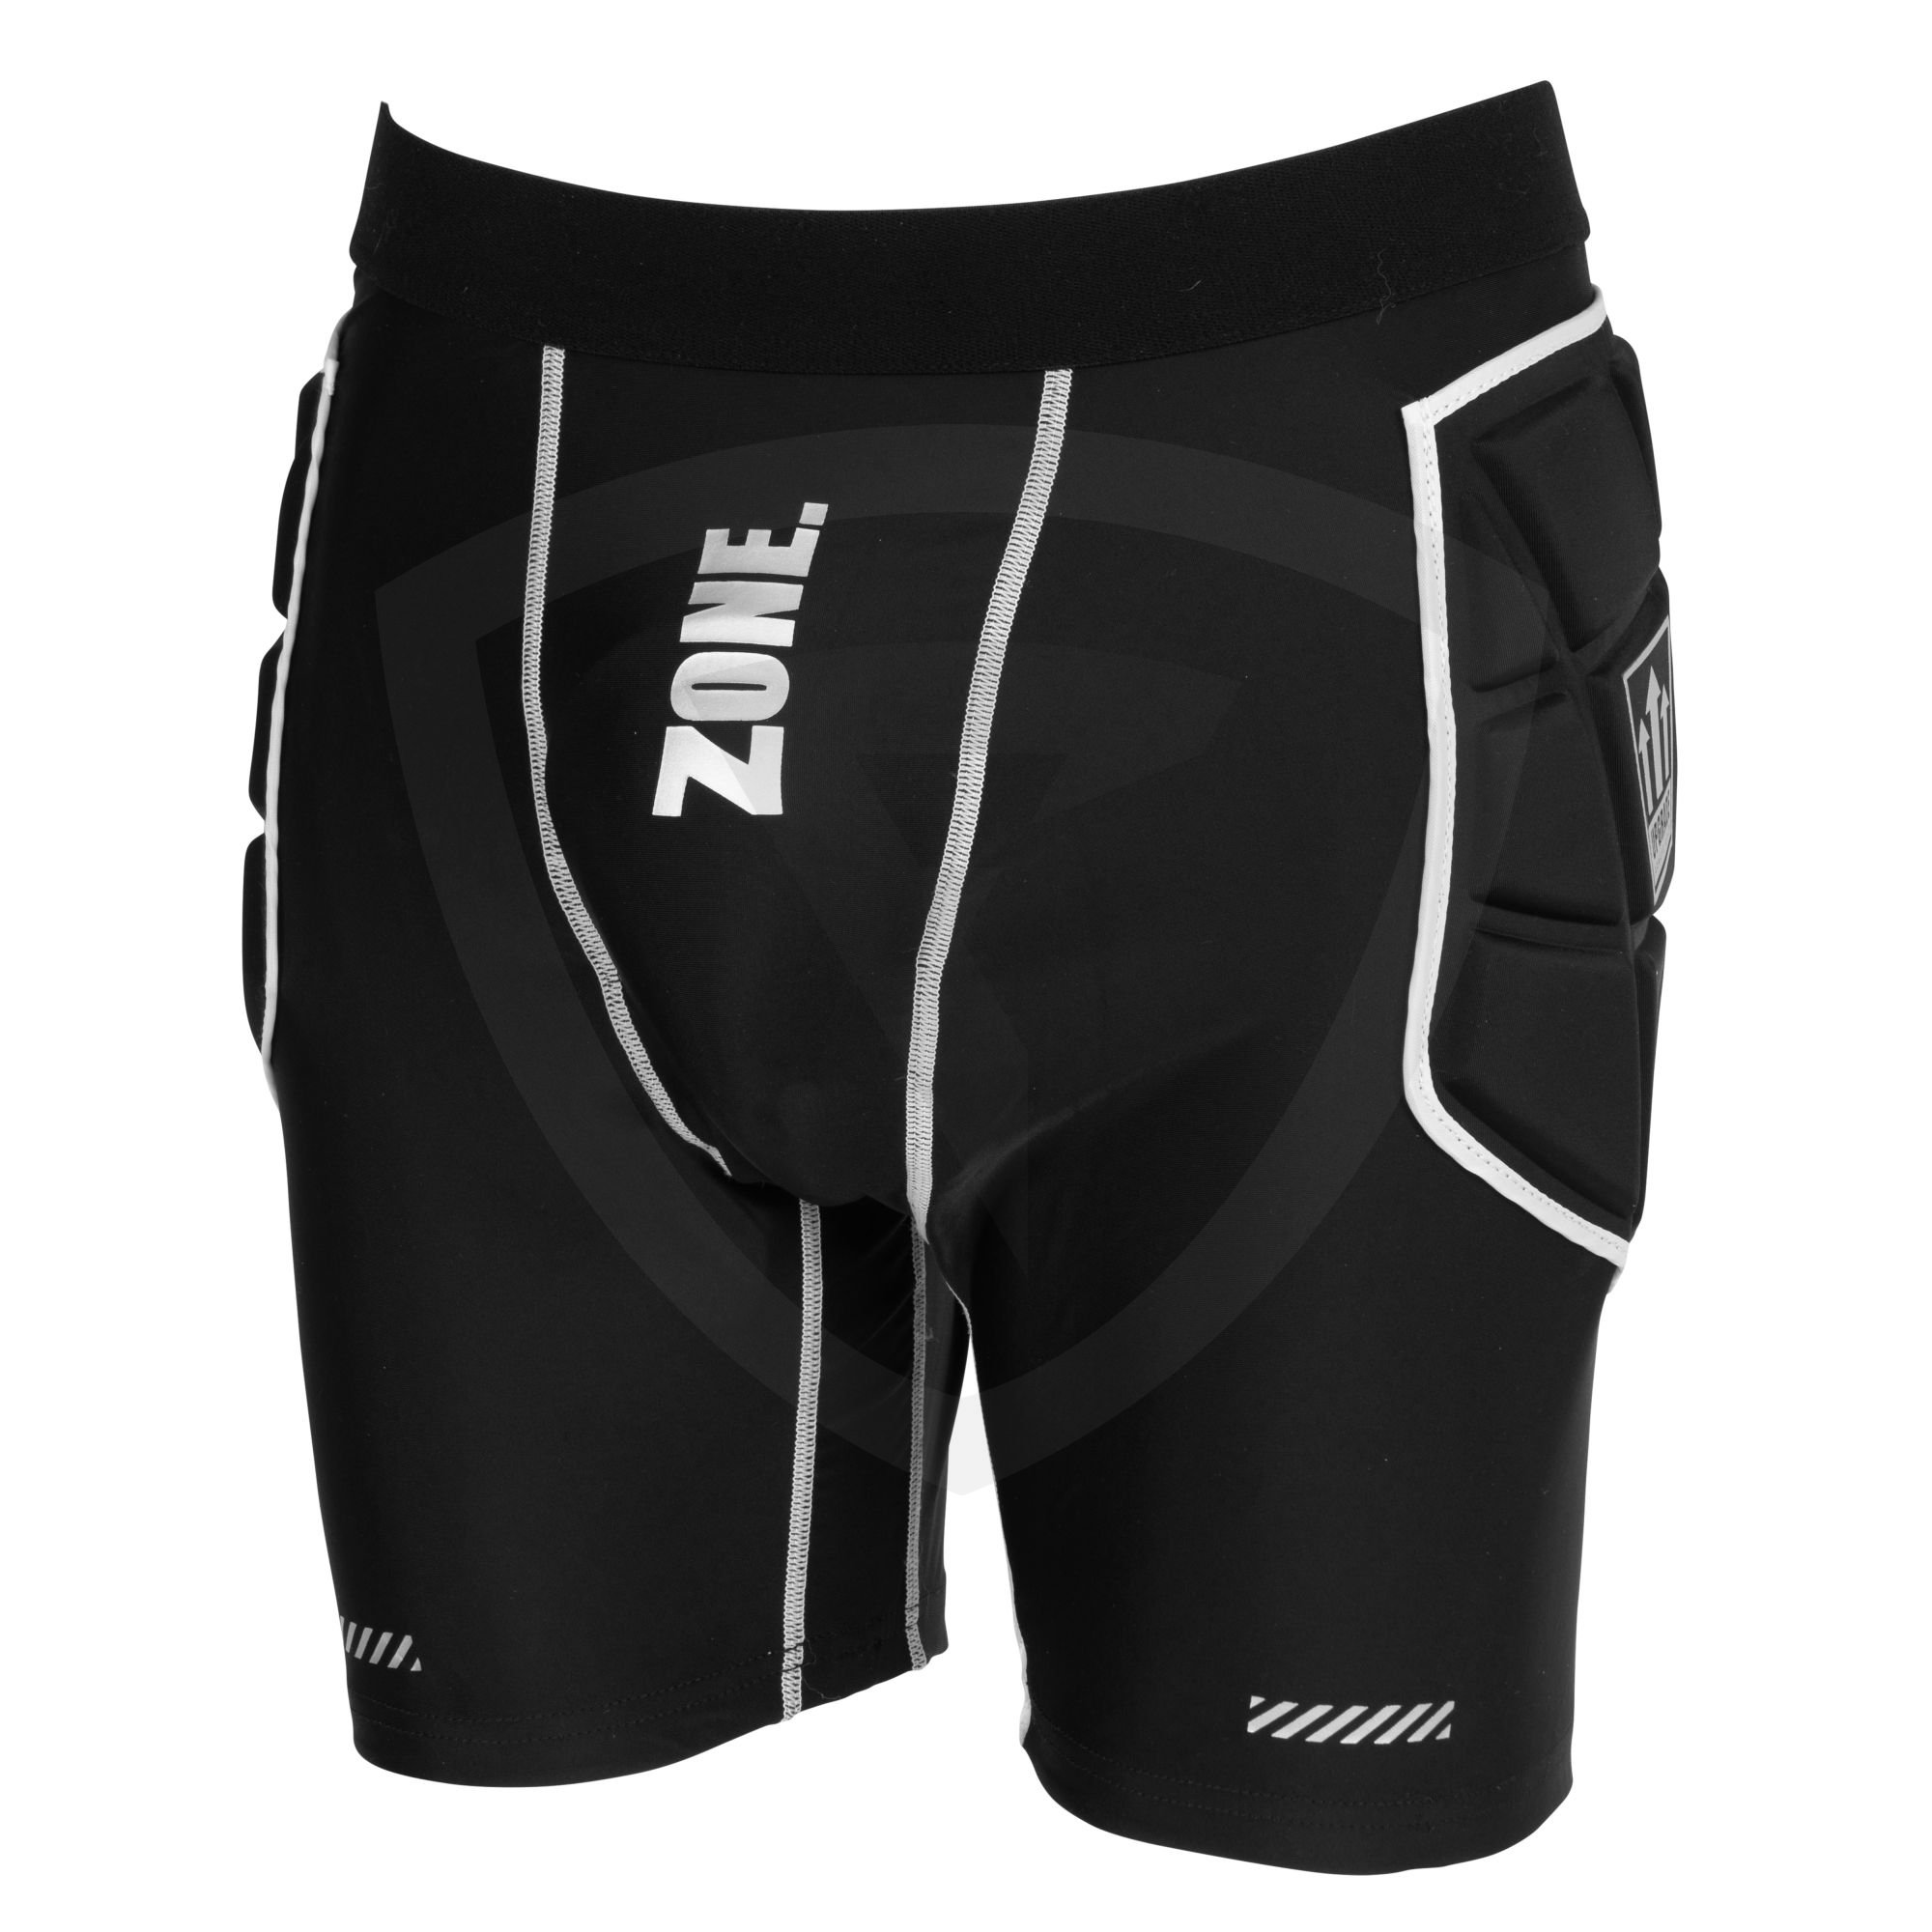 Zone UPGRADE Goalie Shorts XS/S